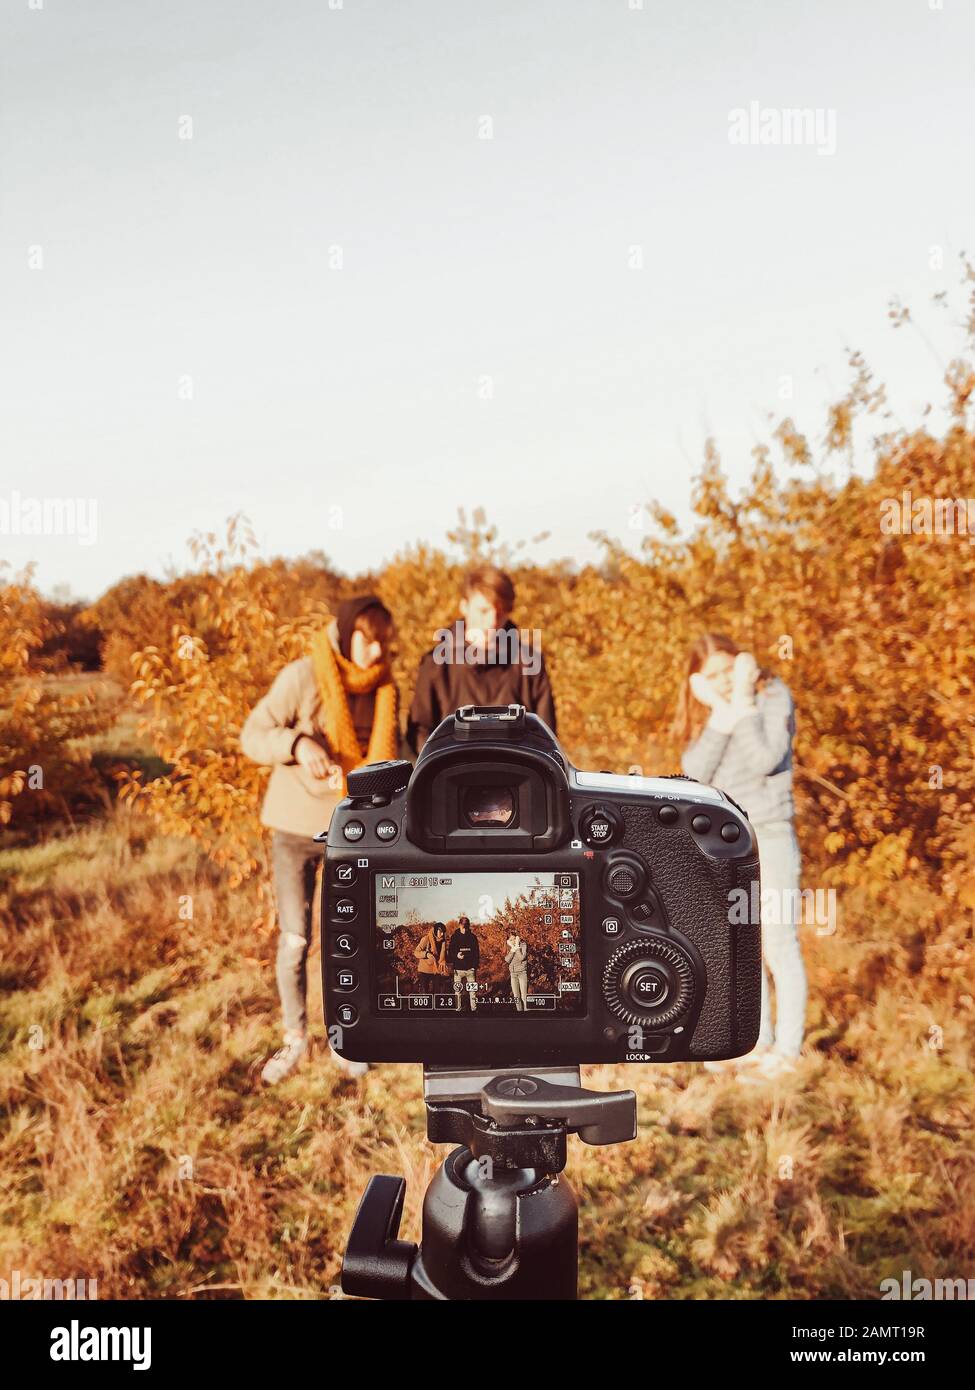 Trois personnes photographiées dans un paysage d'automne, aux Pays-Bas Banque D'Images